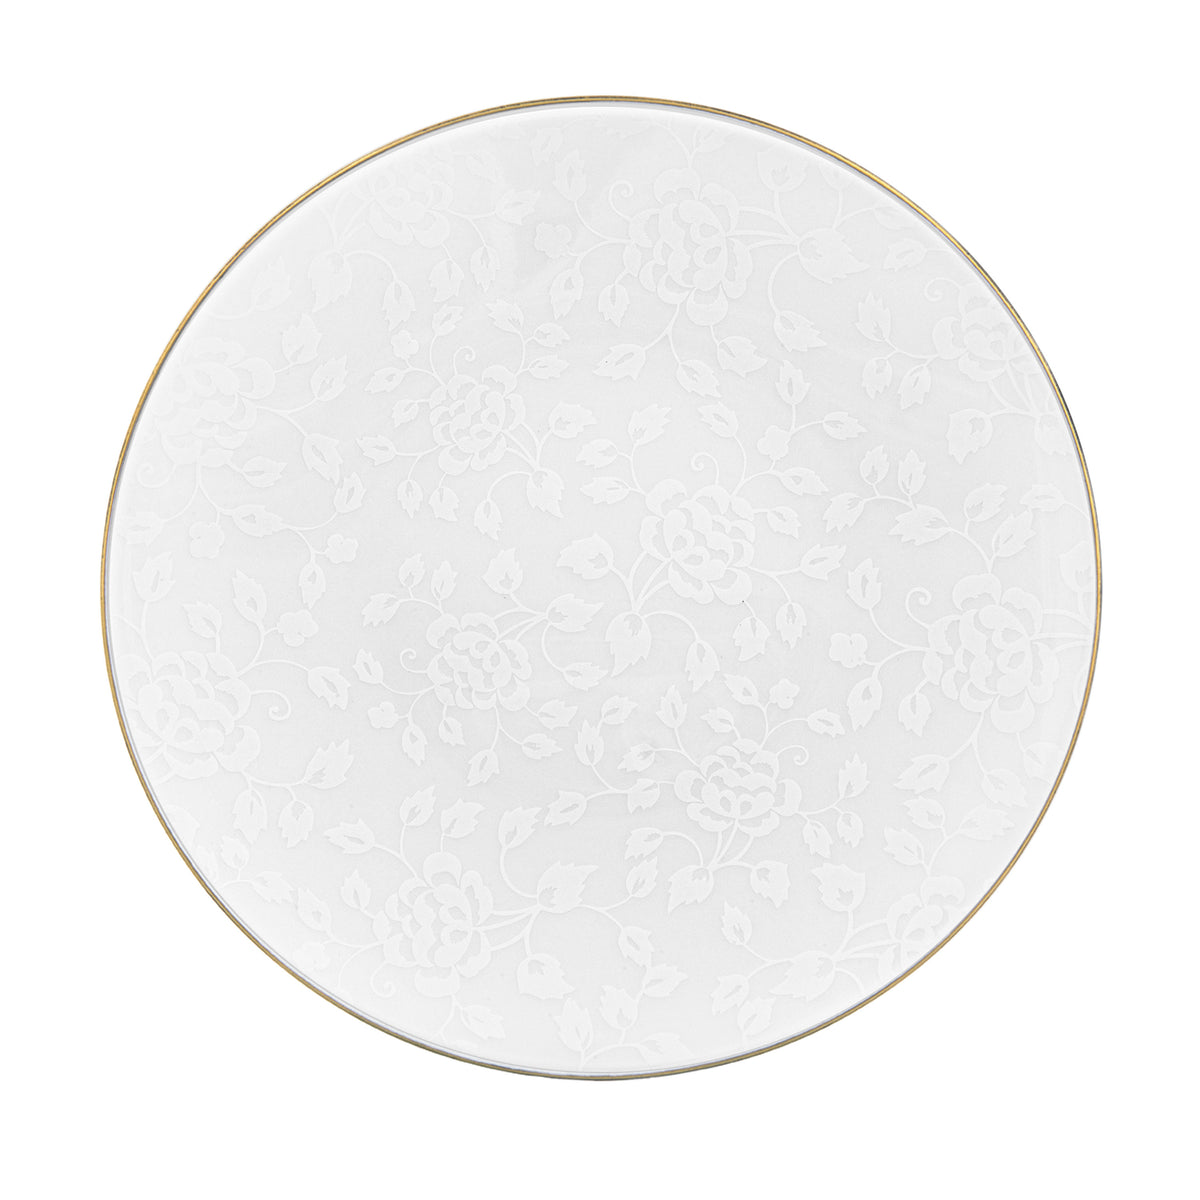 CHARDONS blanc sur blanc filet Or - Assiette de présentation